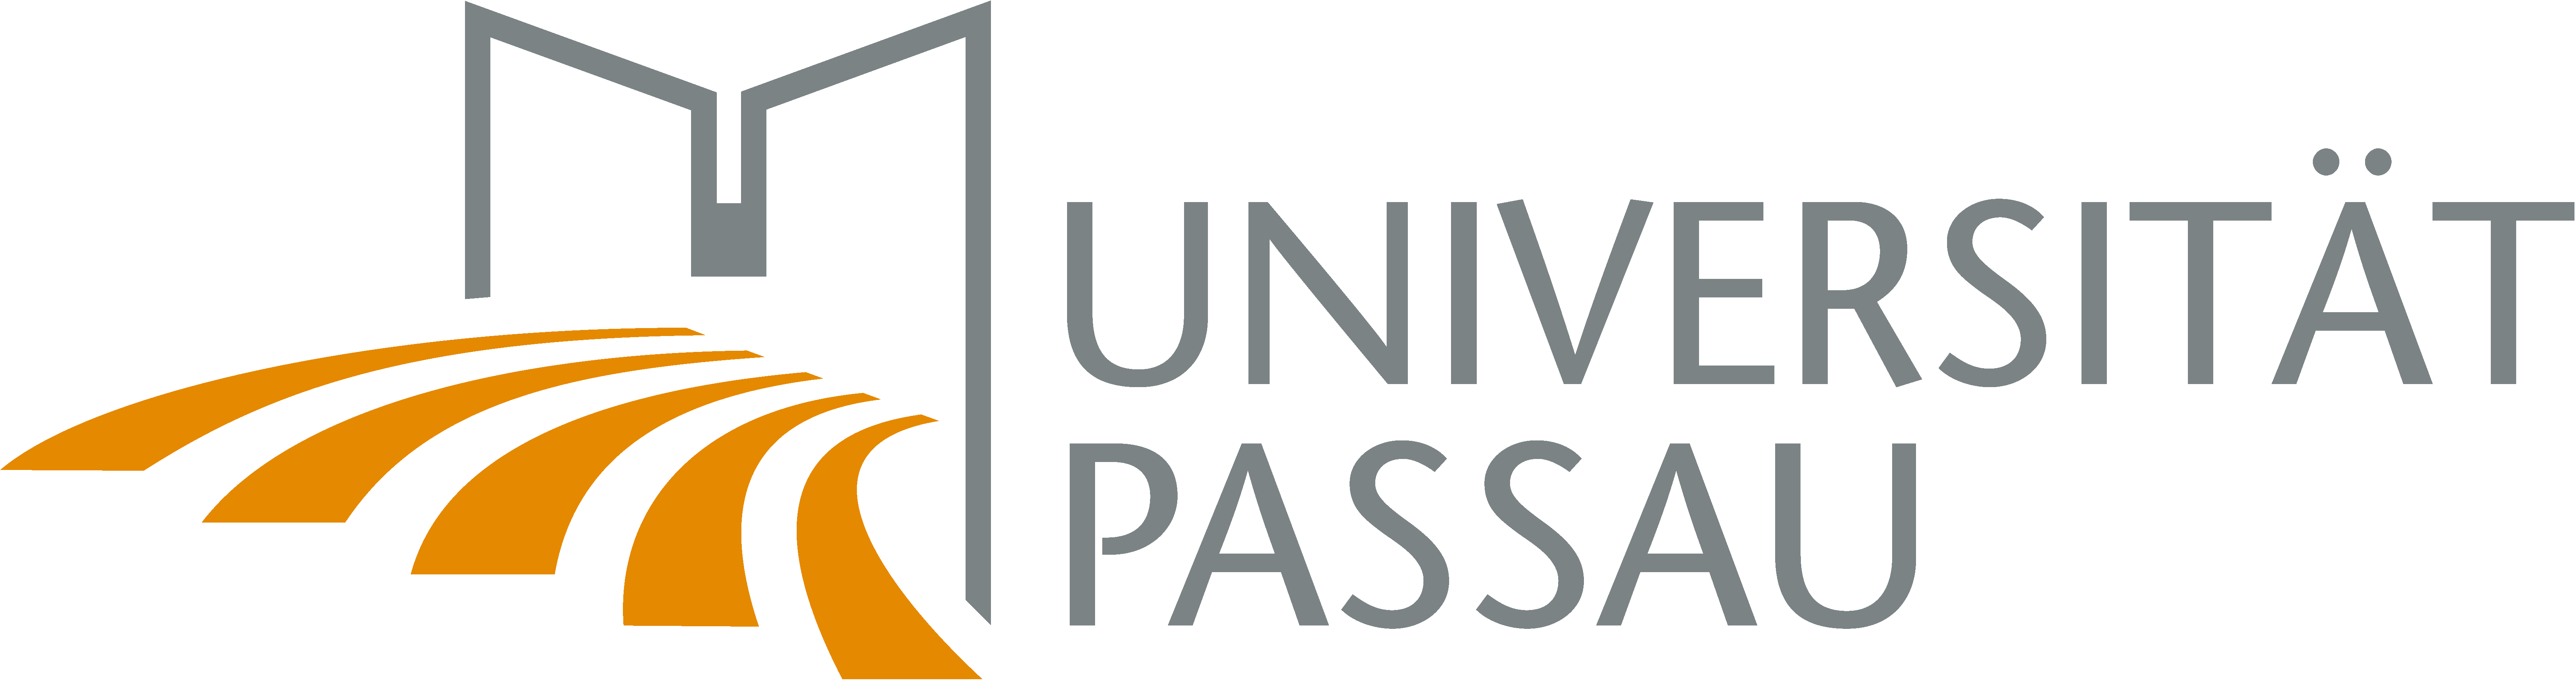 Universität Passau